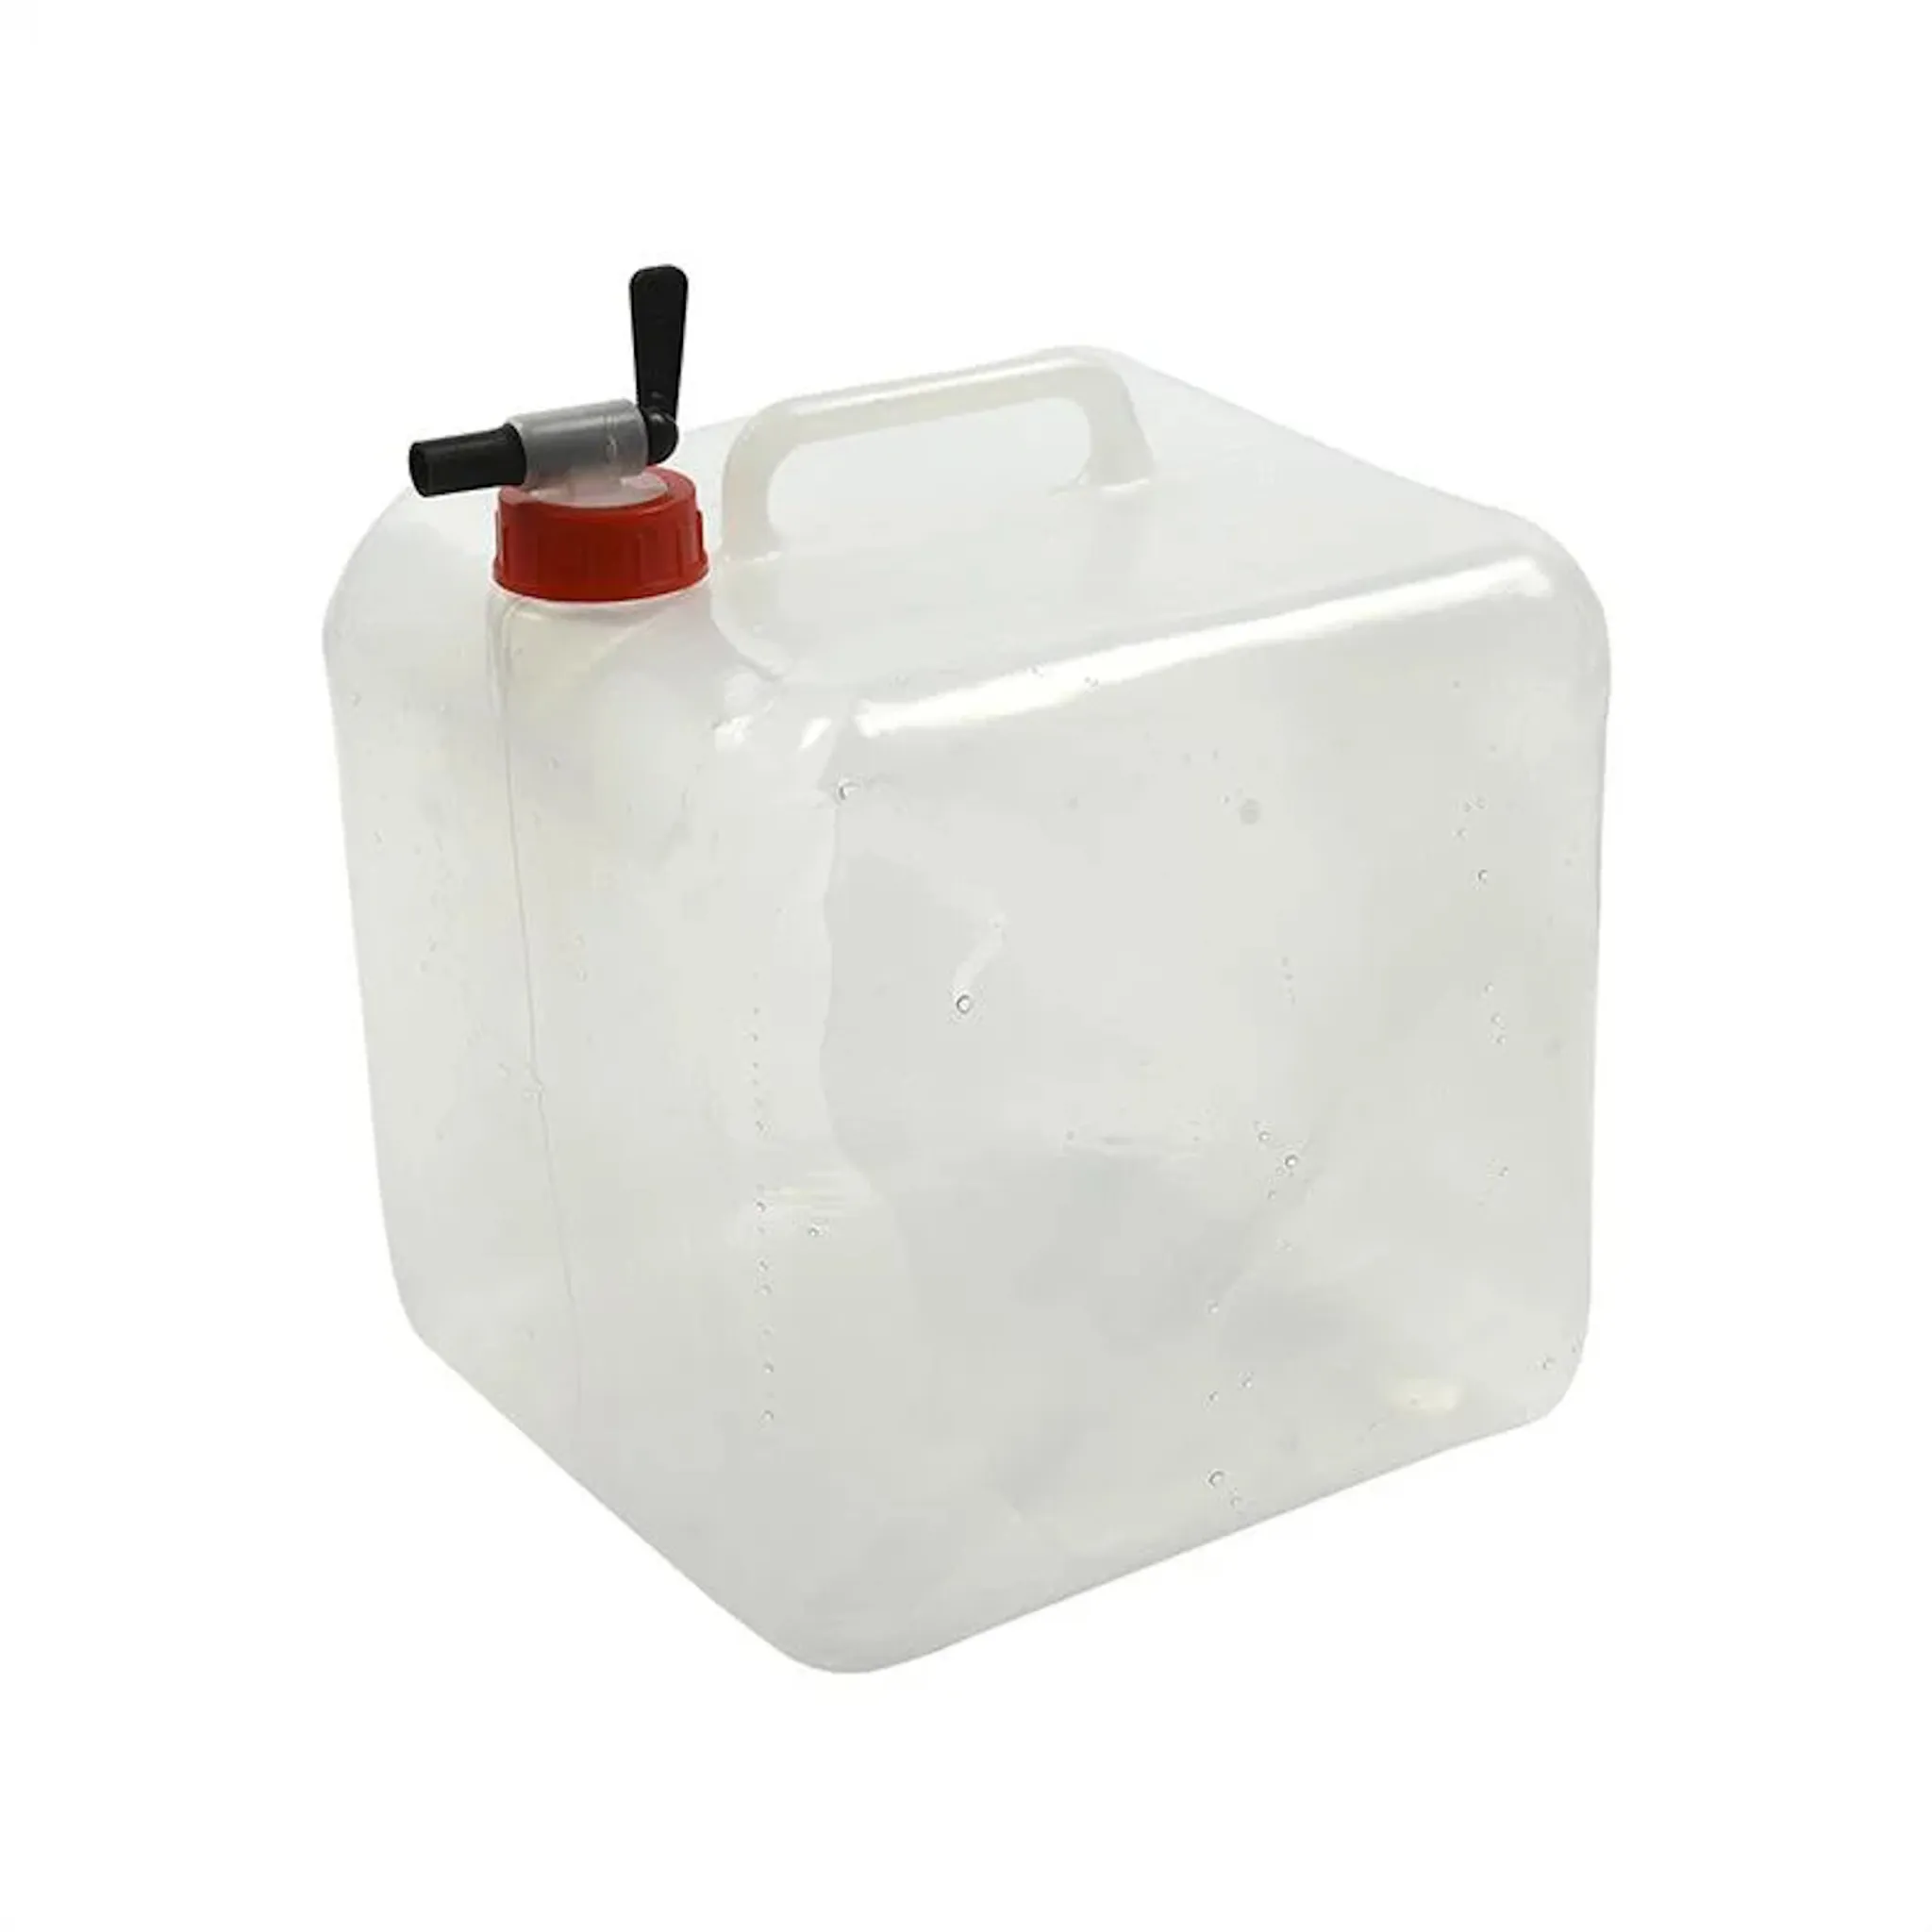 Flach faltbarer Wasserkanister mit Tragegriff, 5 Liter, BPA-frei